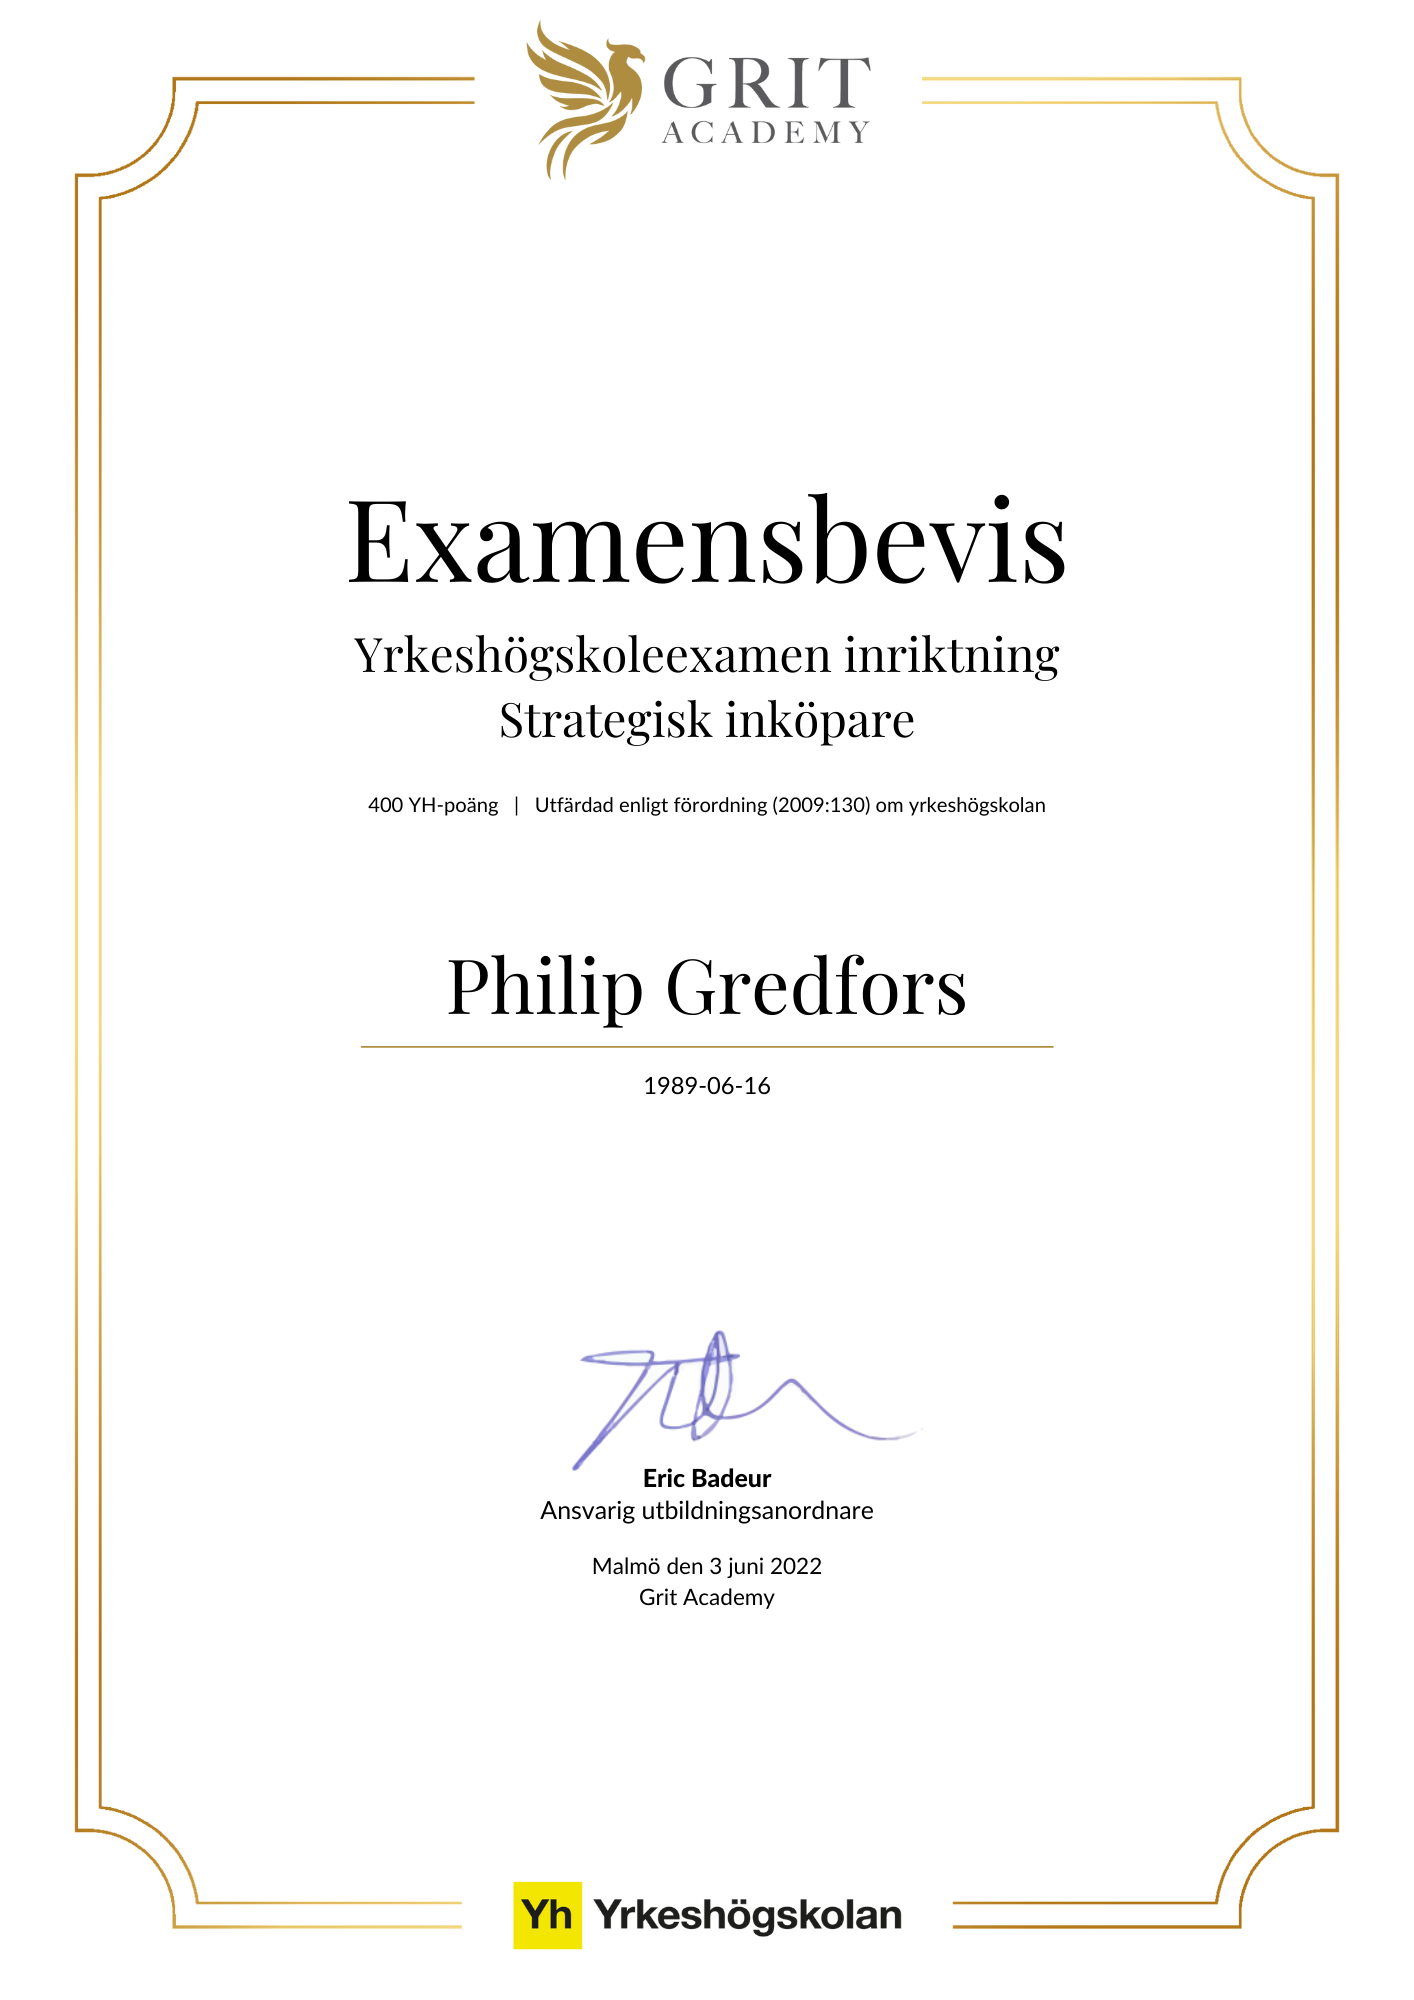 Examensbevis Philip Gredfors - 1